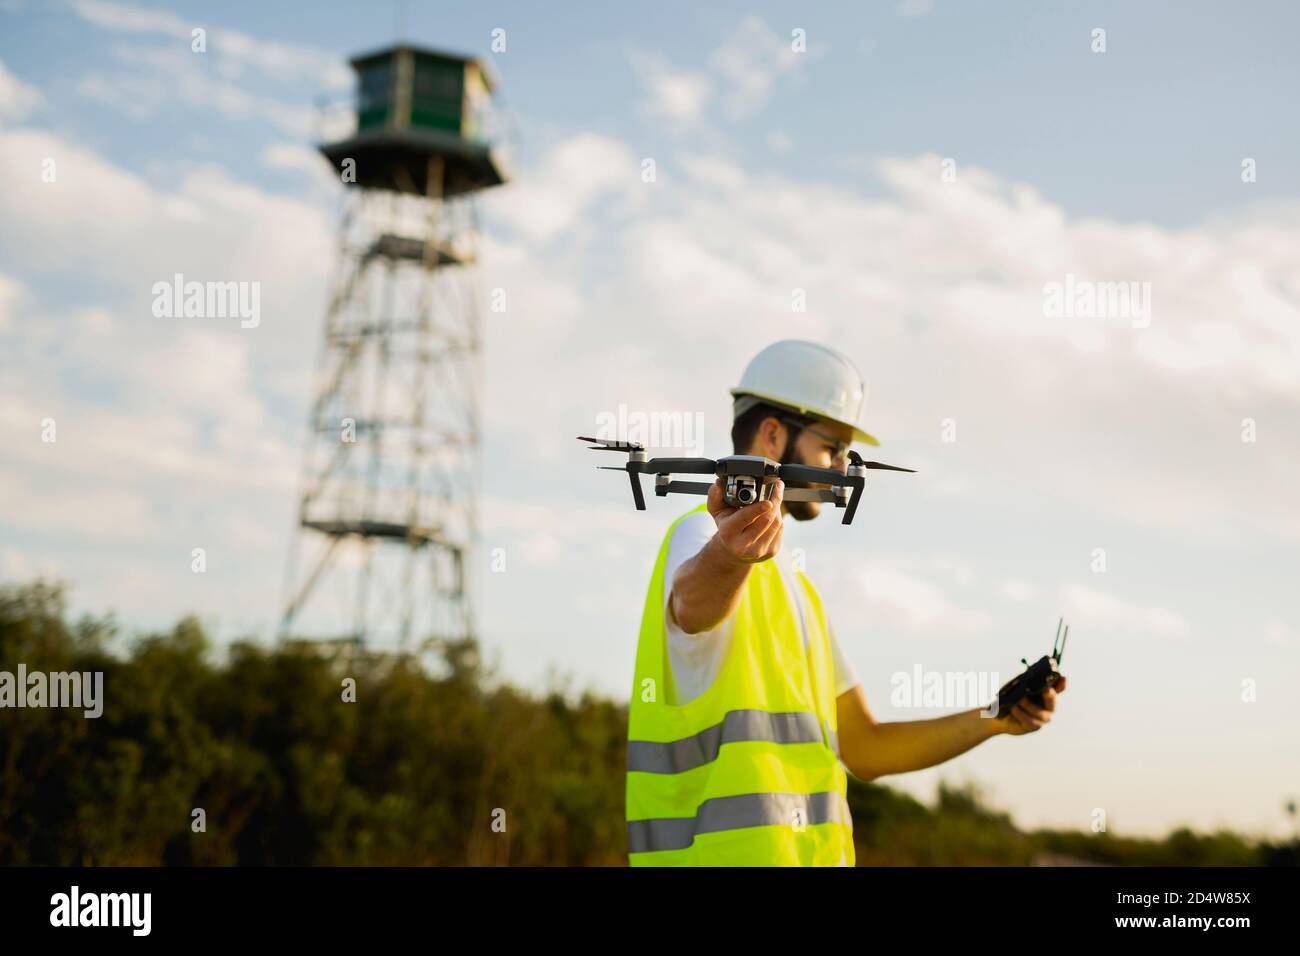 Un opérateur de drone lance un drone dans un environnement rural Banque D'Images